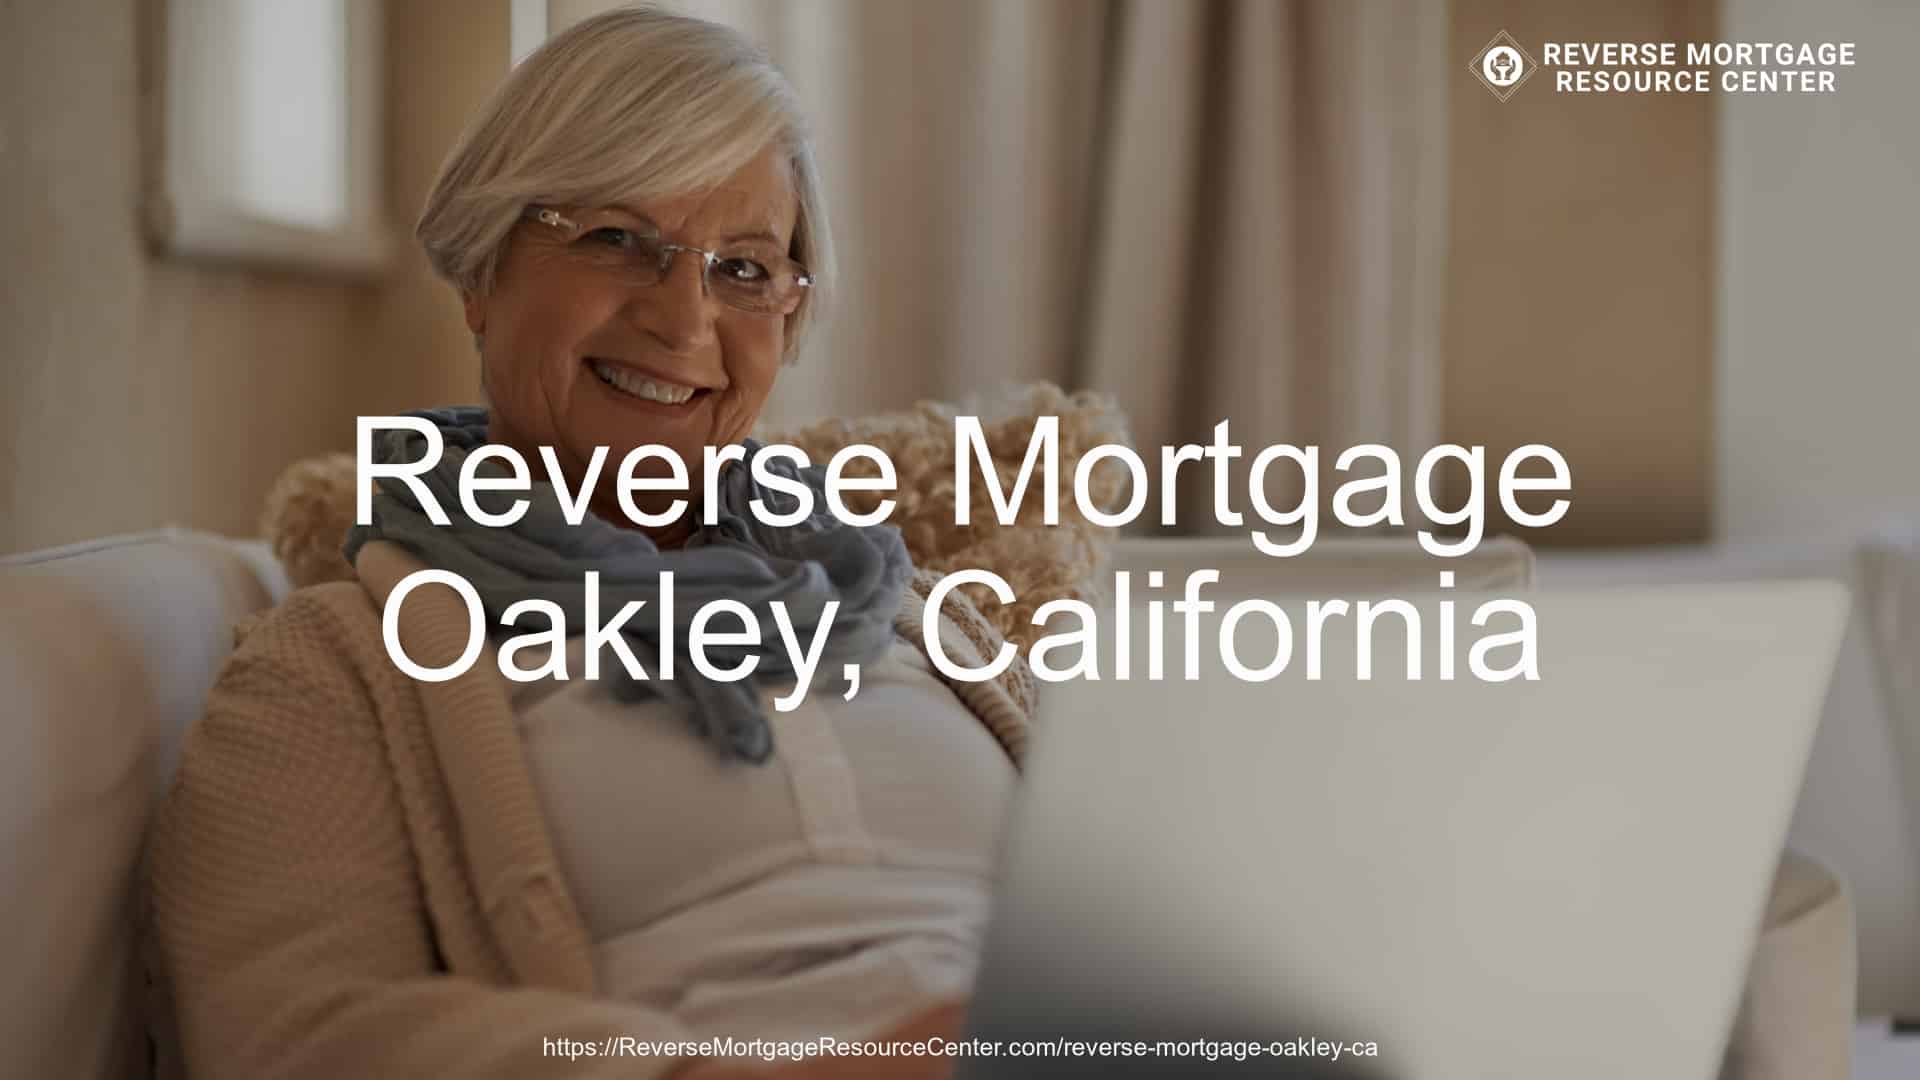 Reverse Mortgage Loans in Oakley California